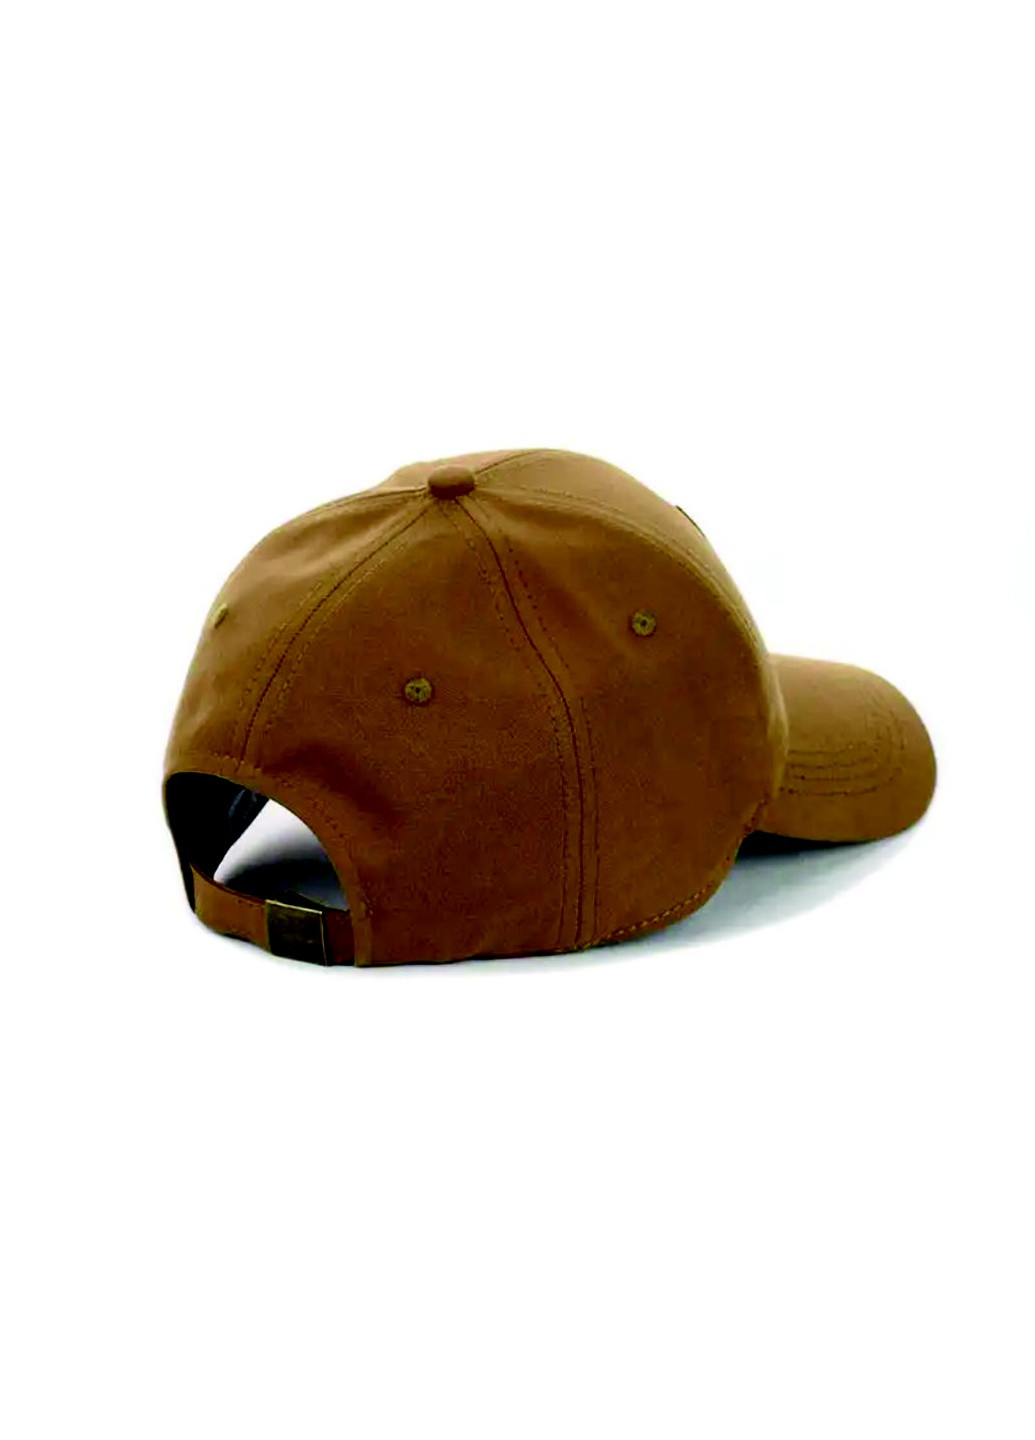 Кепка бейсболка с вышивкой Тризуб M/L Коричневый New Fashion кепка с сеткой (258122835)